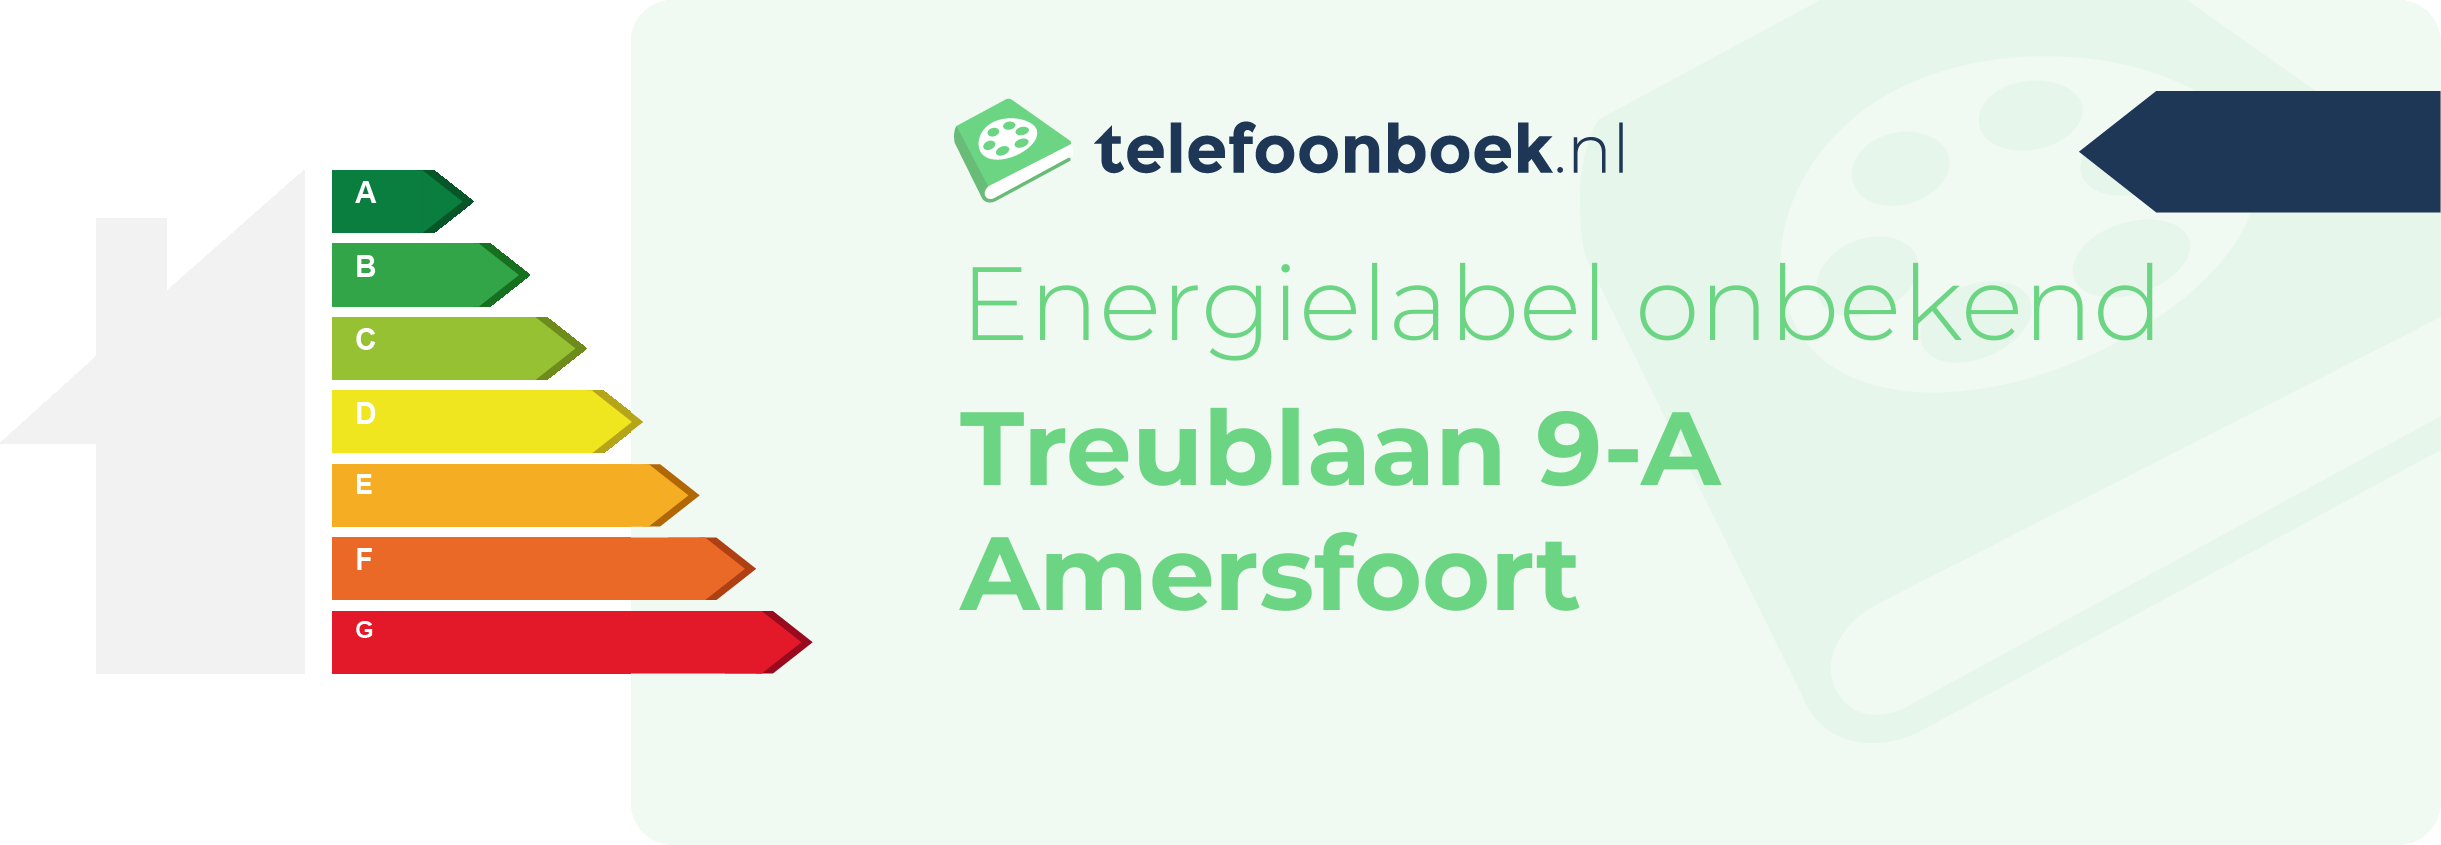 Energielabel Treublaan 9-A Amersfoort